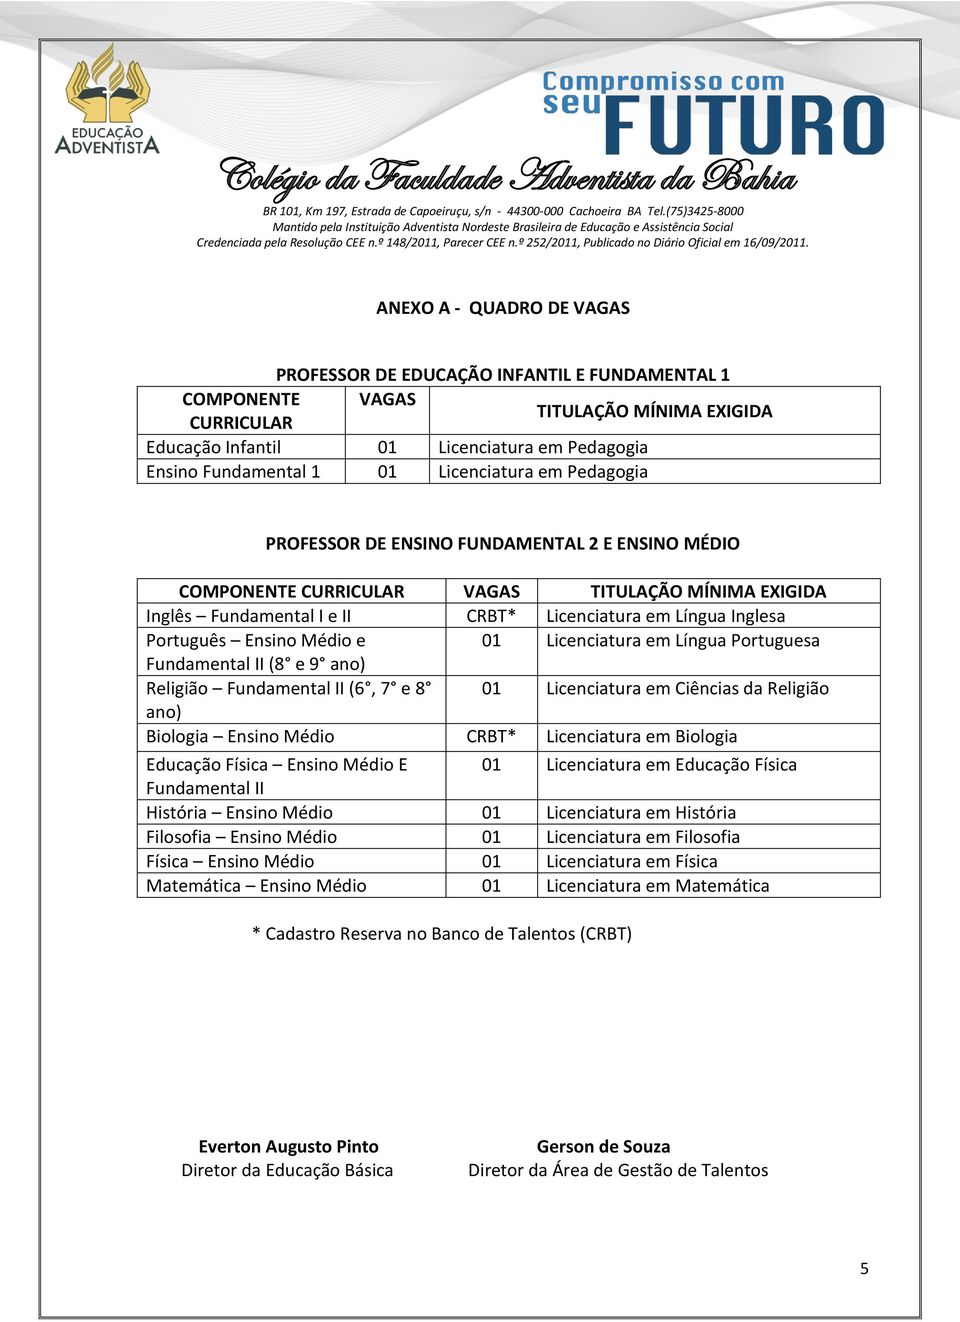 Português Ensino Médio e 01 Licenciatura em Língua Portuguesa Fundamental II (8 e 9 ano) Religião Fundamental II (6, 7 e 8 01 Licenciatura em Ciências da Religião ano) Biologia Ensino Médio CRBT*